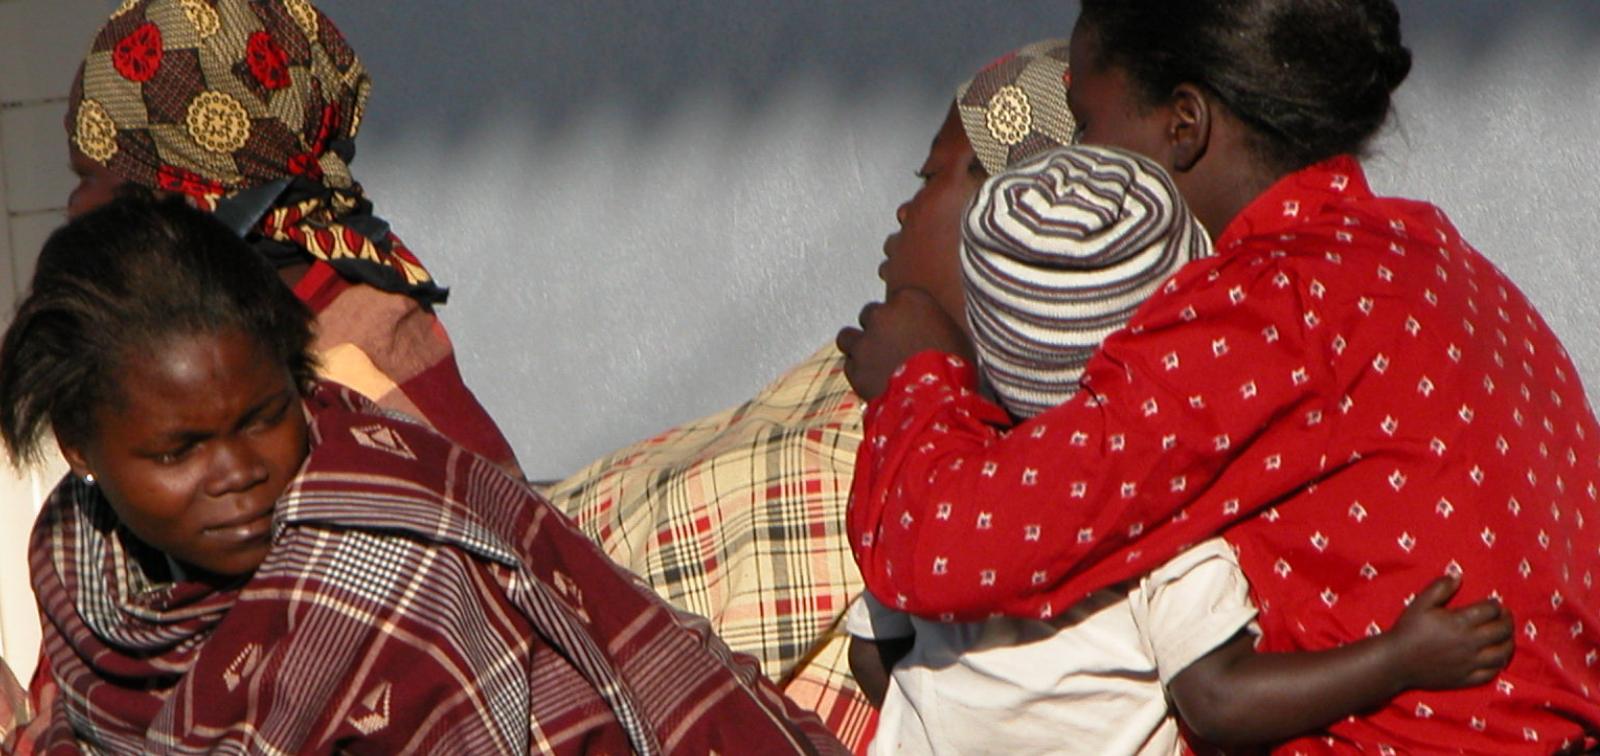 Mares i fills a Moçambic